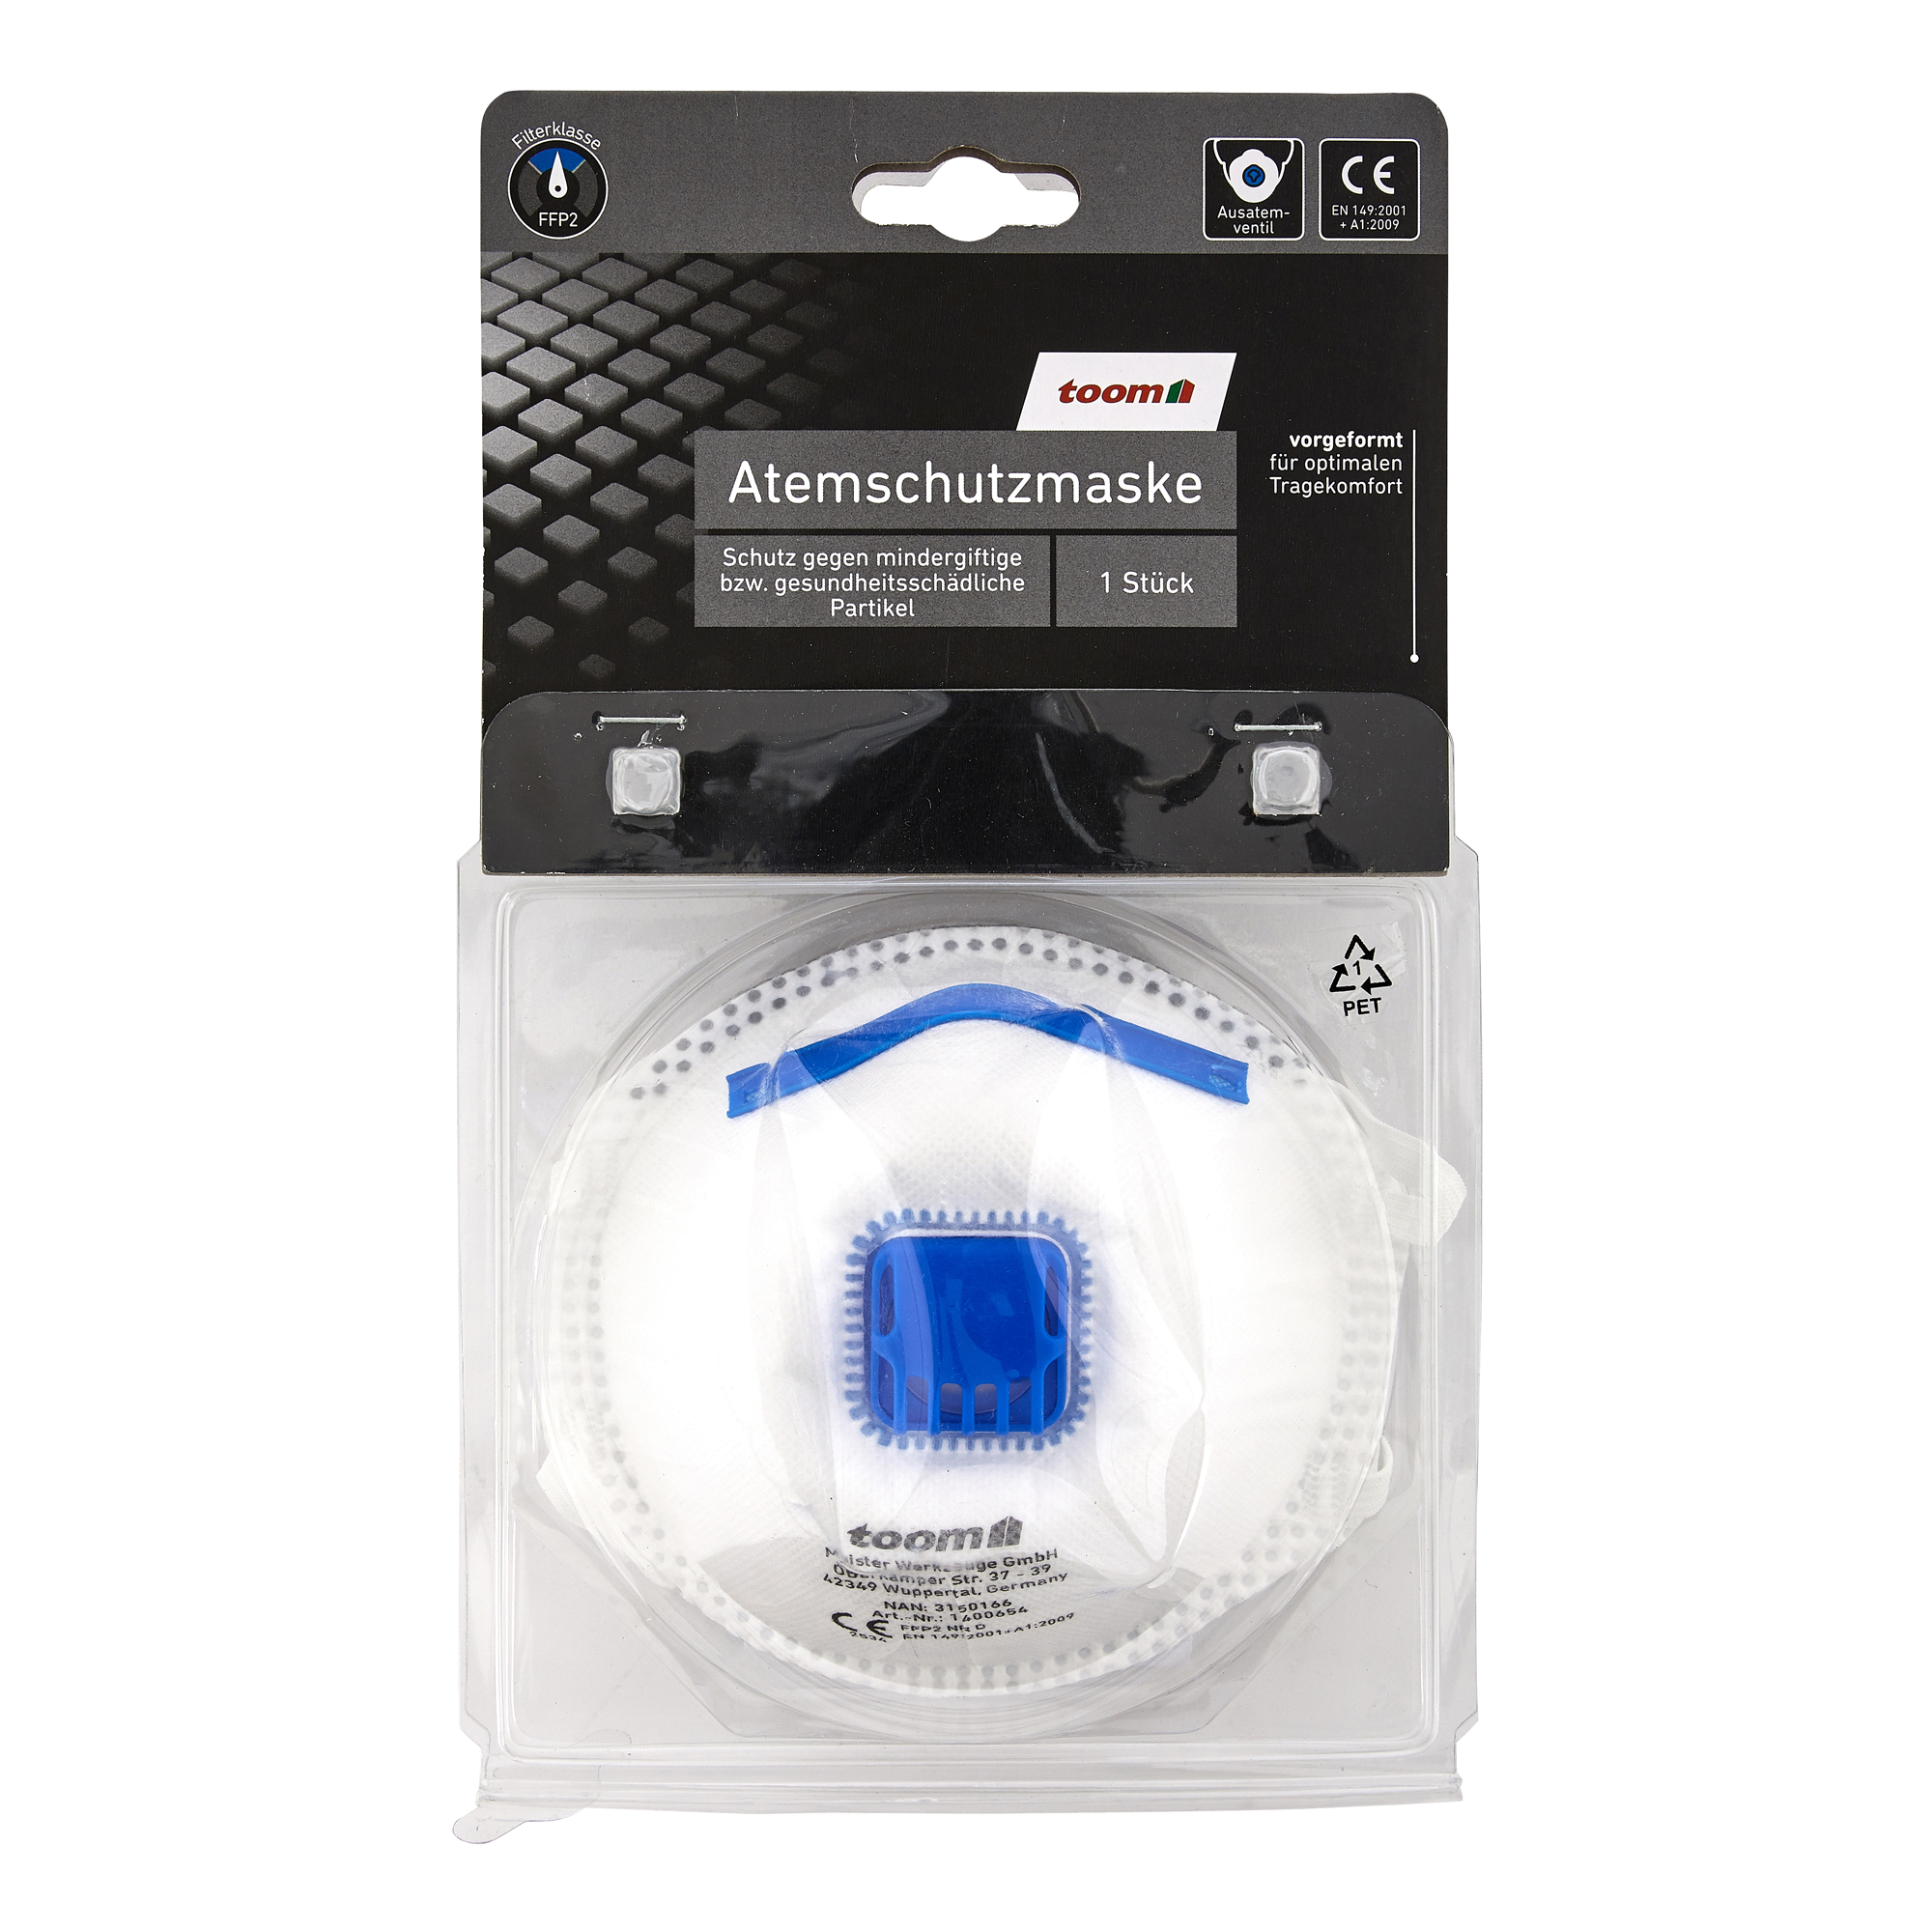 FFP2-Atemschutzmaske mit Ventil, 1 Stück + product picture